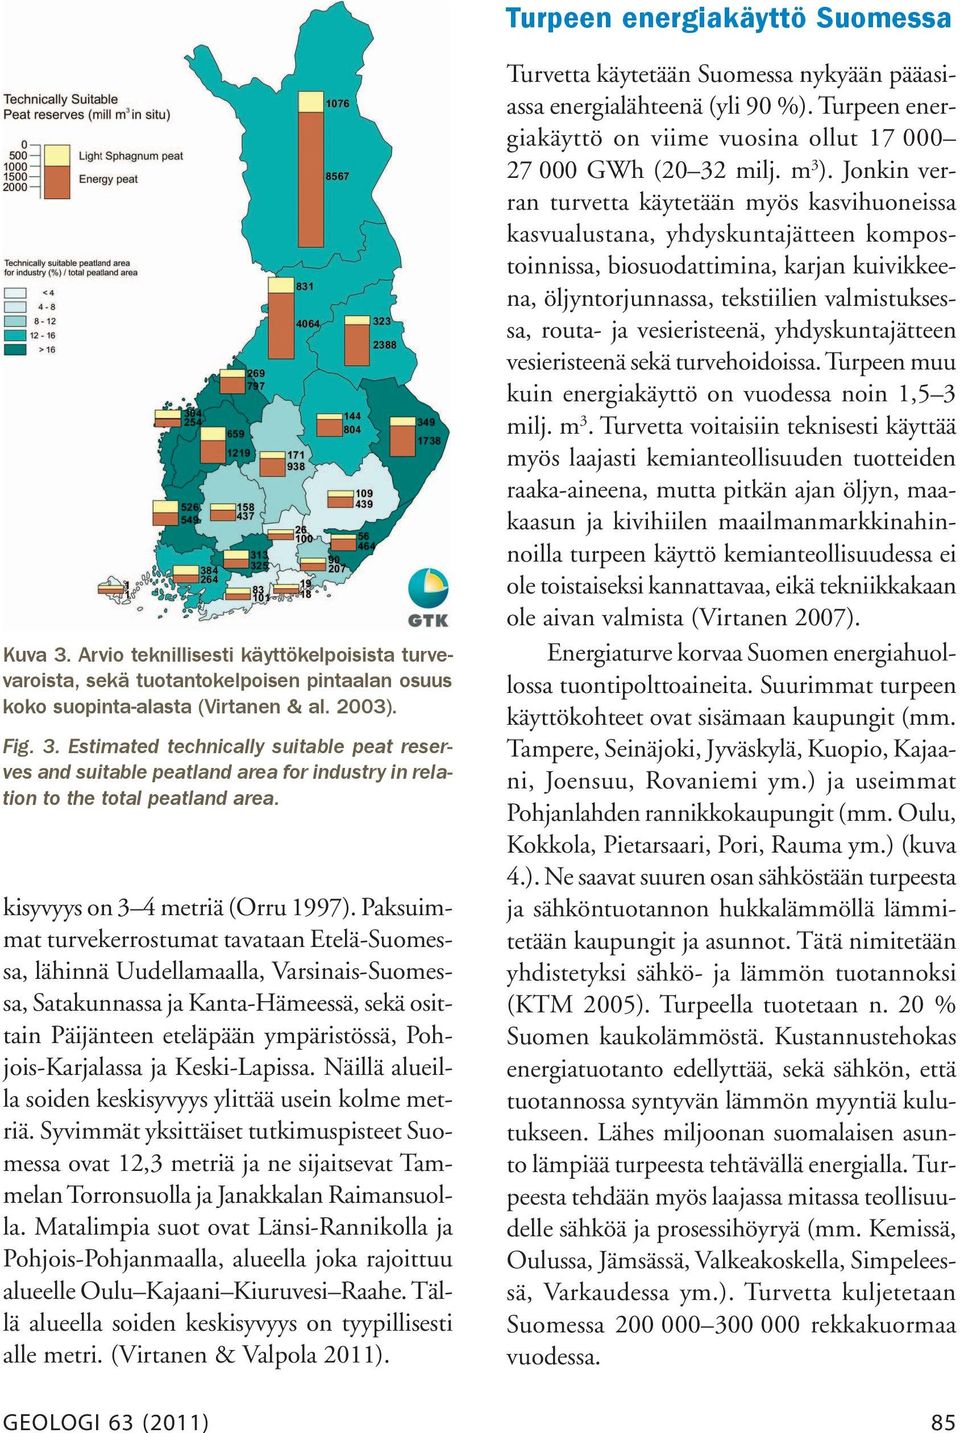 Paksuimmat turvekerrostumat tavataan Etelä-Suomessa, lähinnä Uudellamaalla, Varsinais-Suomessa, Satakunnassa ja Kanta-Hämeessä, sekä osittain Päijänteen eteläpään ympäristössä, Pohjois-Karjalassa ja